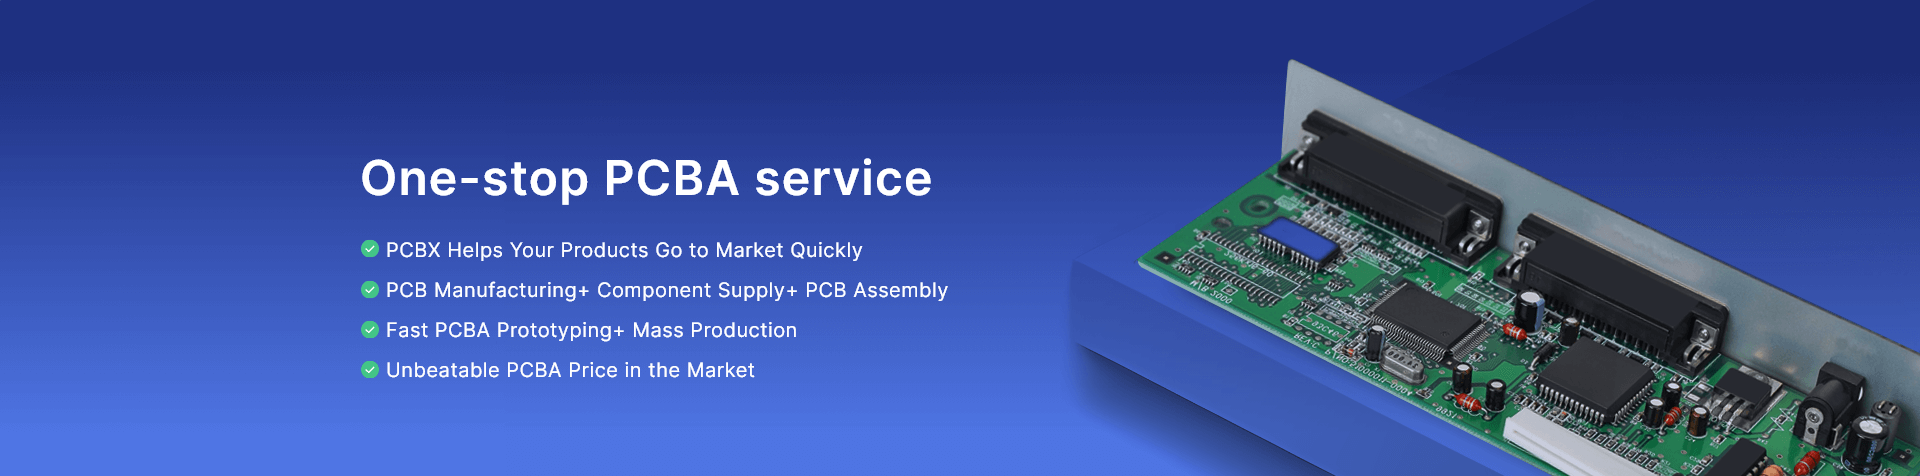 One-stop PCBA service -PCBX